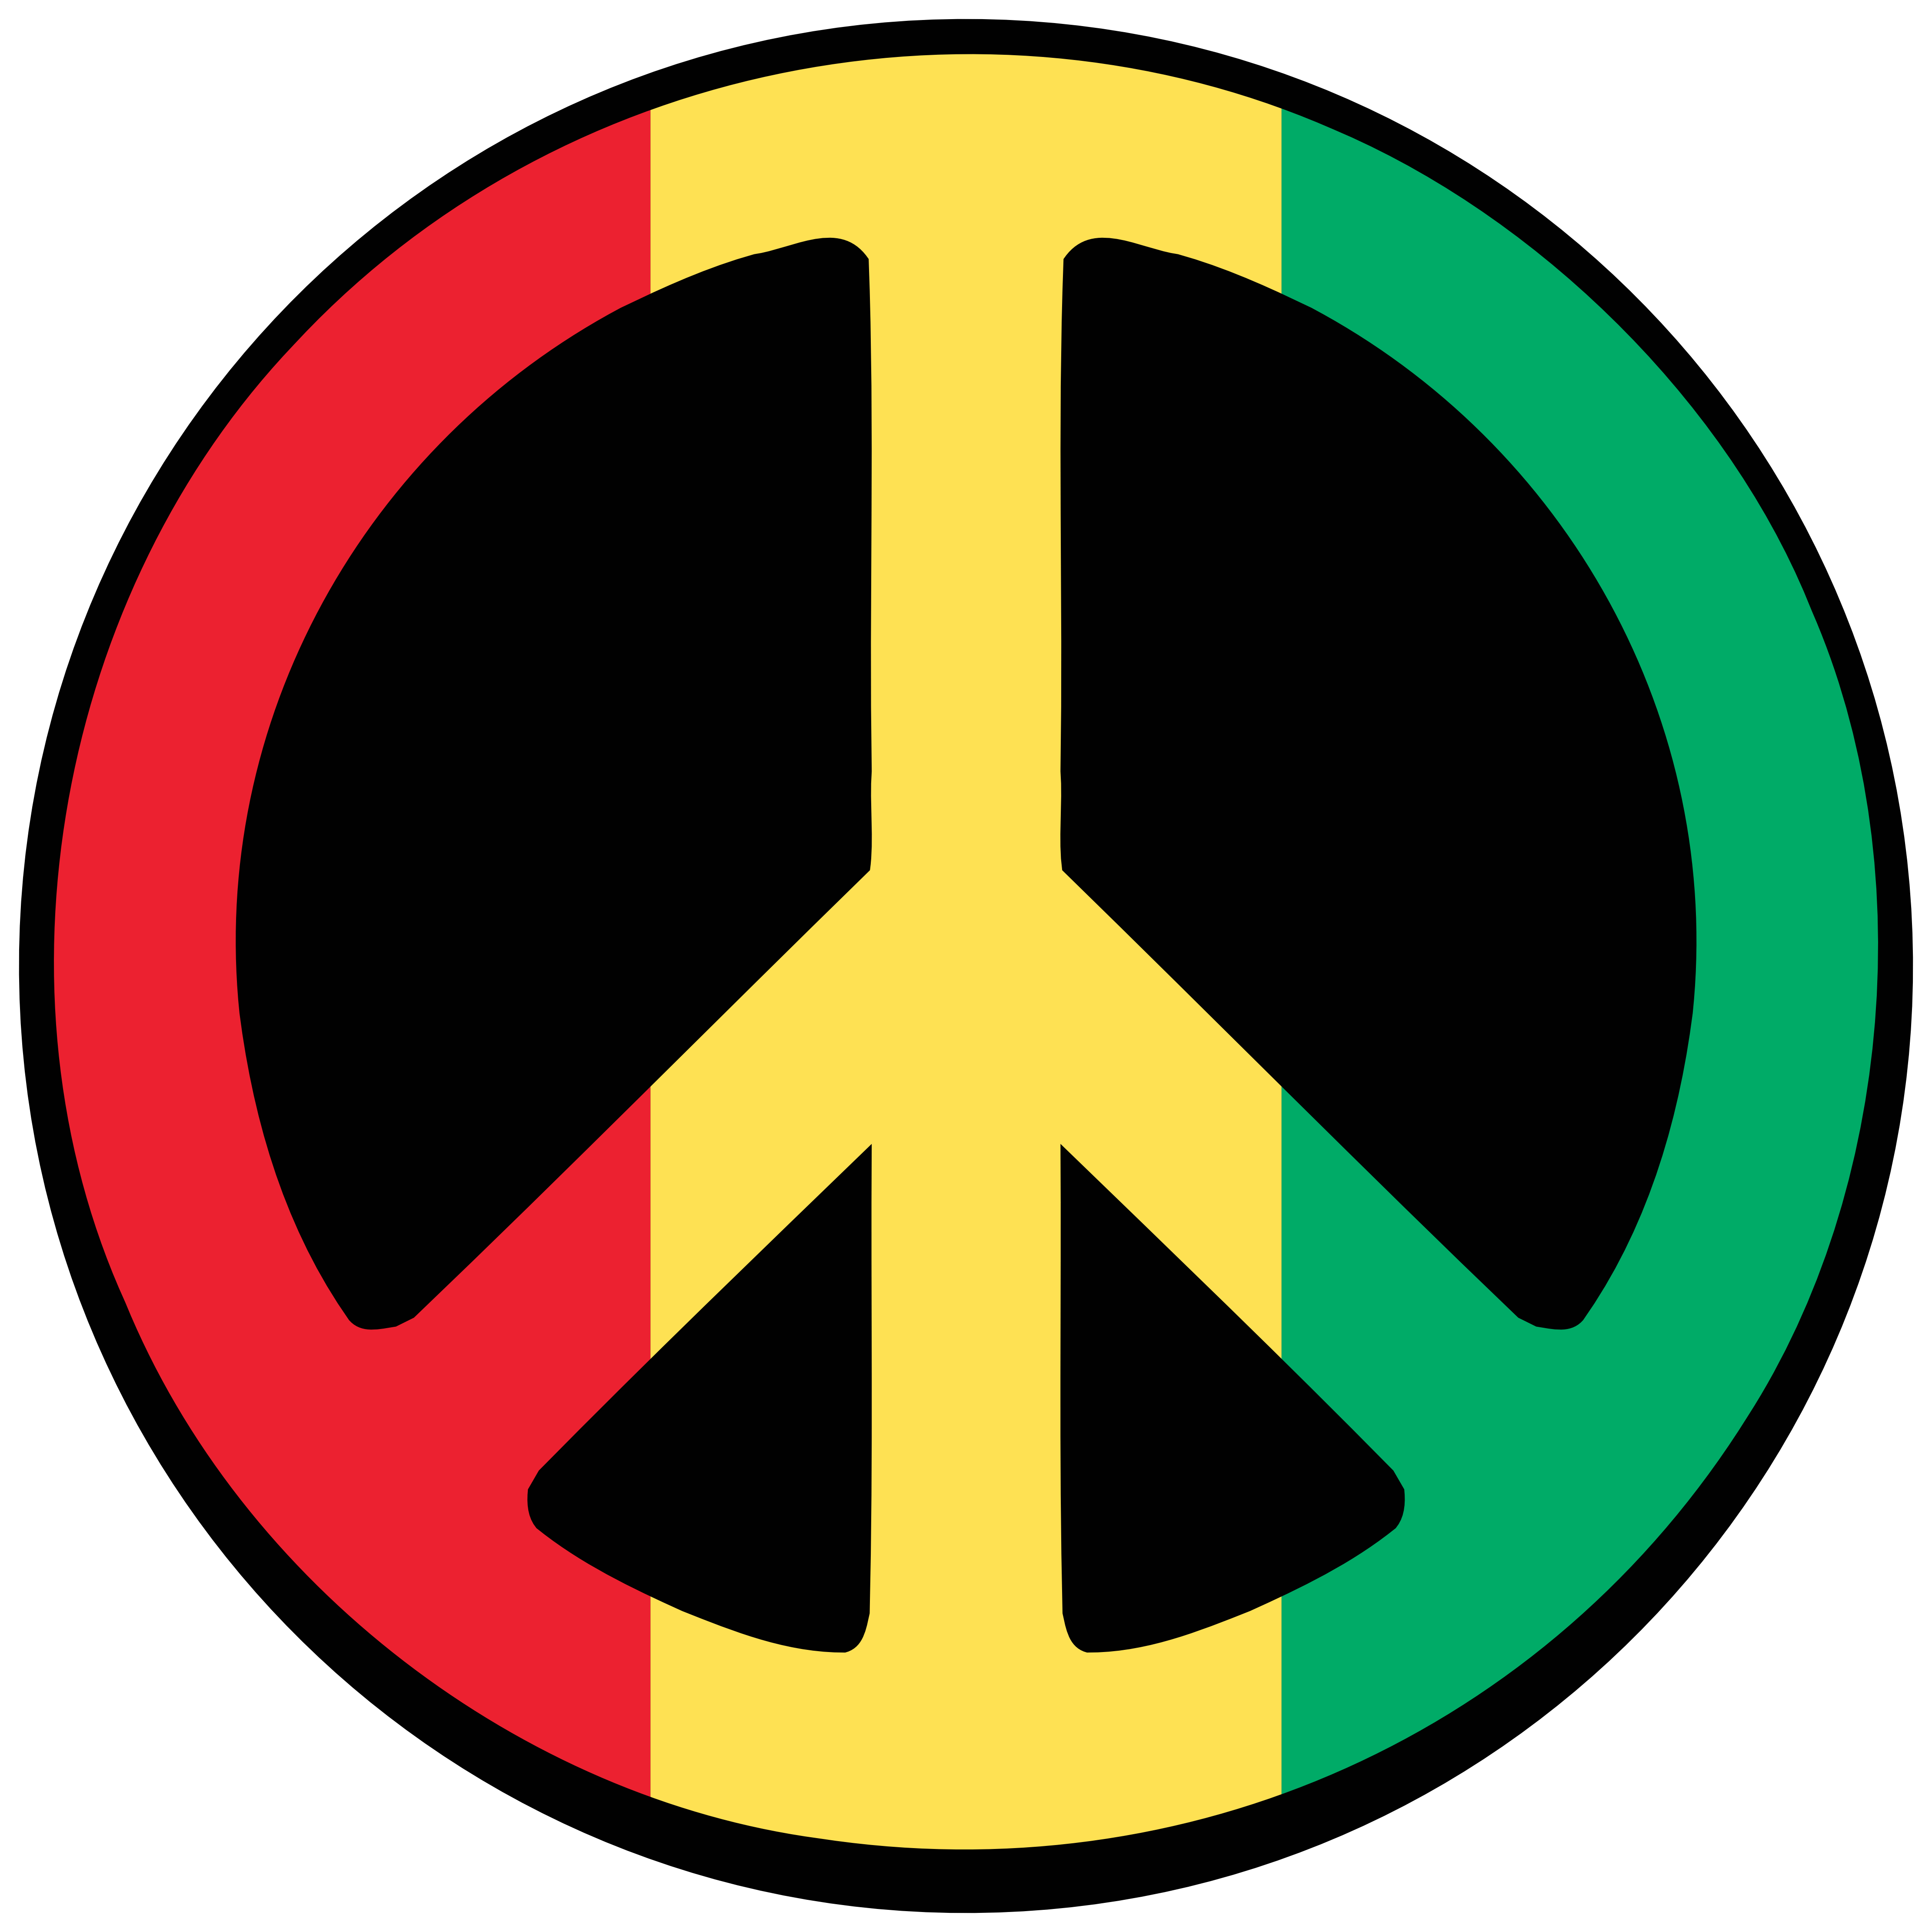 Yellow Peace Sign Logo - Peace sign Logos